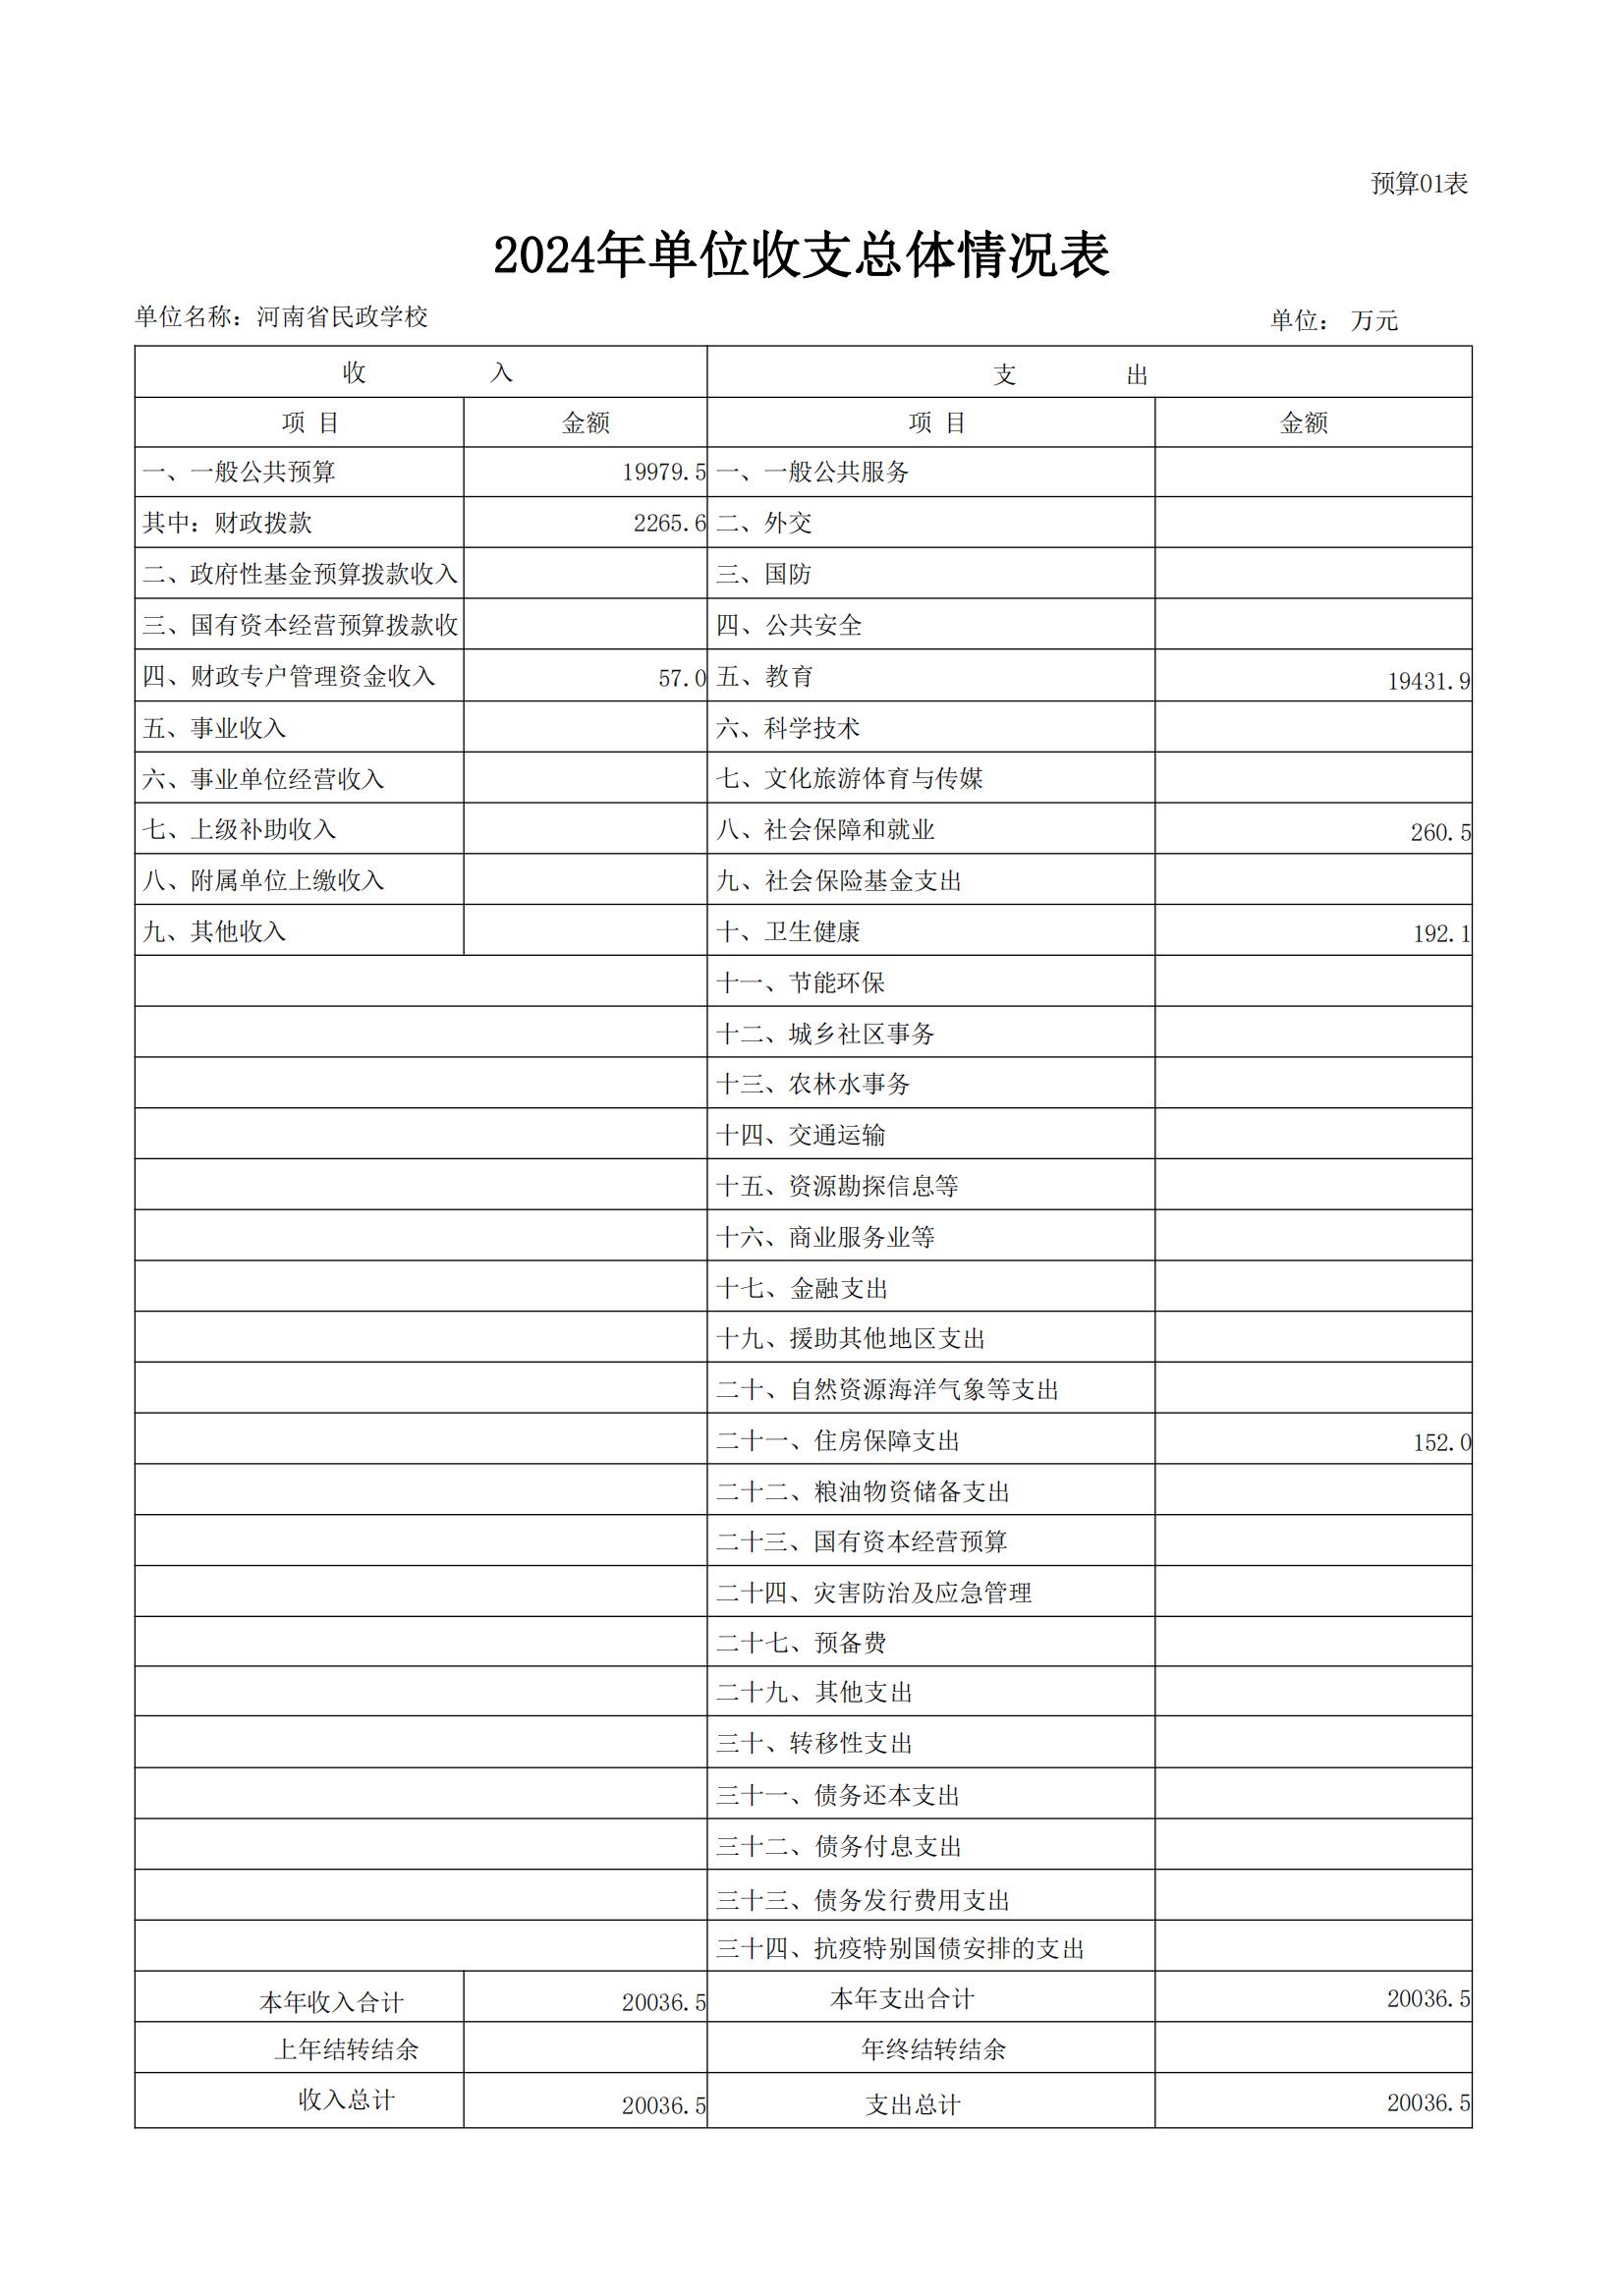 河南省民政学校2024年部门预算公开(1)_08.jpg